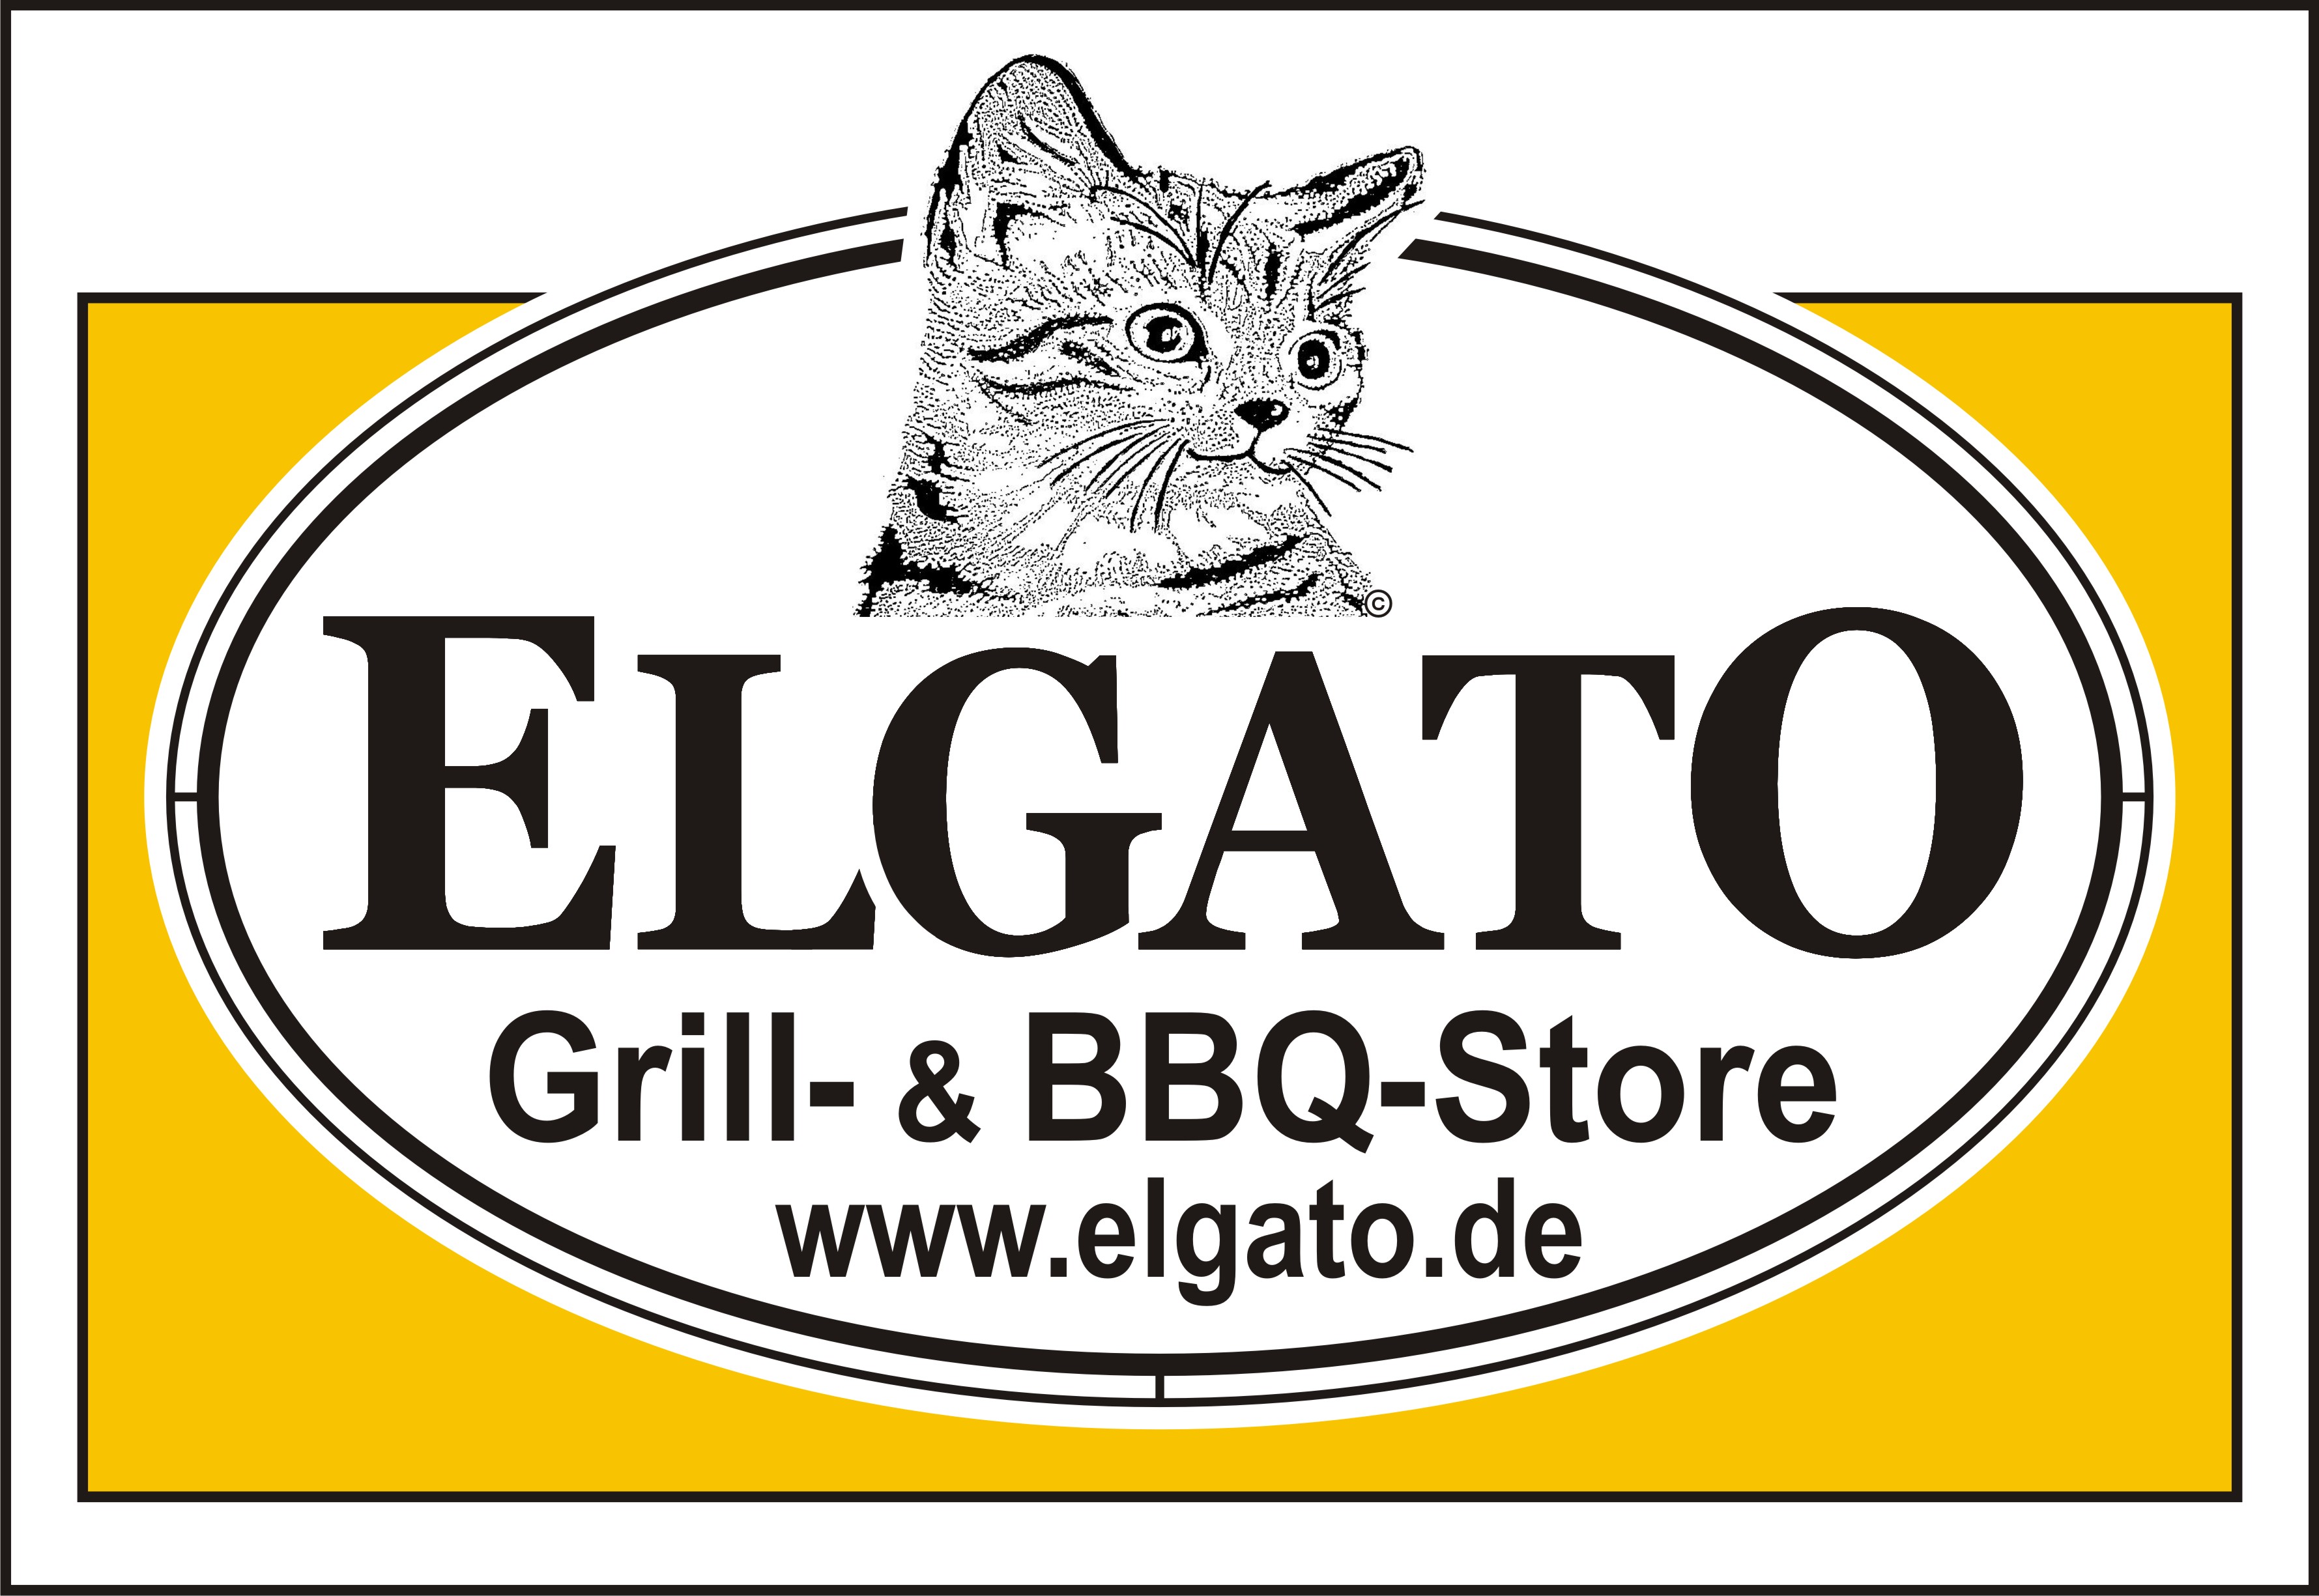 ELGATO - der Fachbetrieb für Grills und Außenküchen.